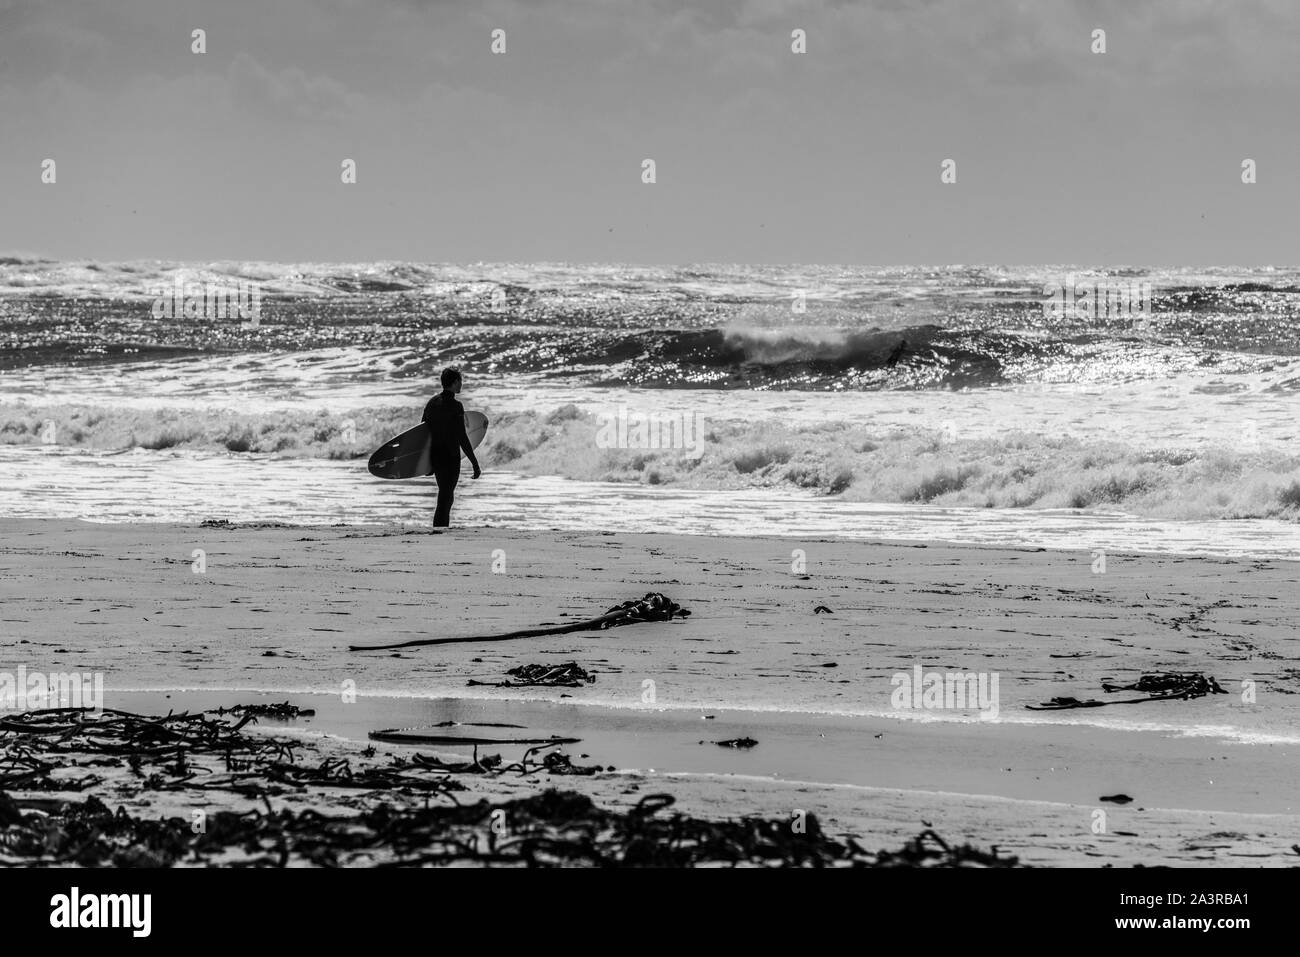 Ein Surfer an der Atlantikküste Südafrika's Küste Uhren der Pause zum Kommetjie surfen Spot von Long Beach, in der Nähe von Kapstadt Stockfoto